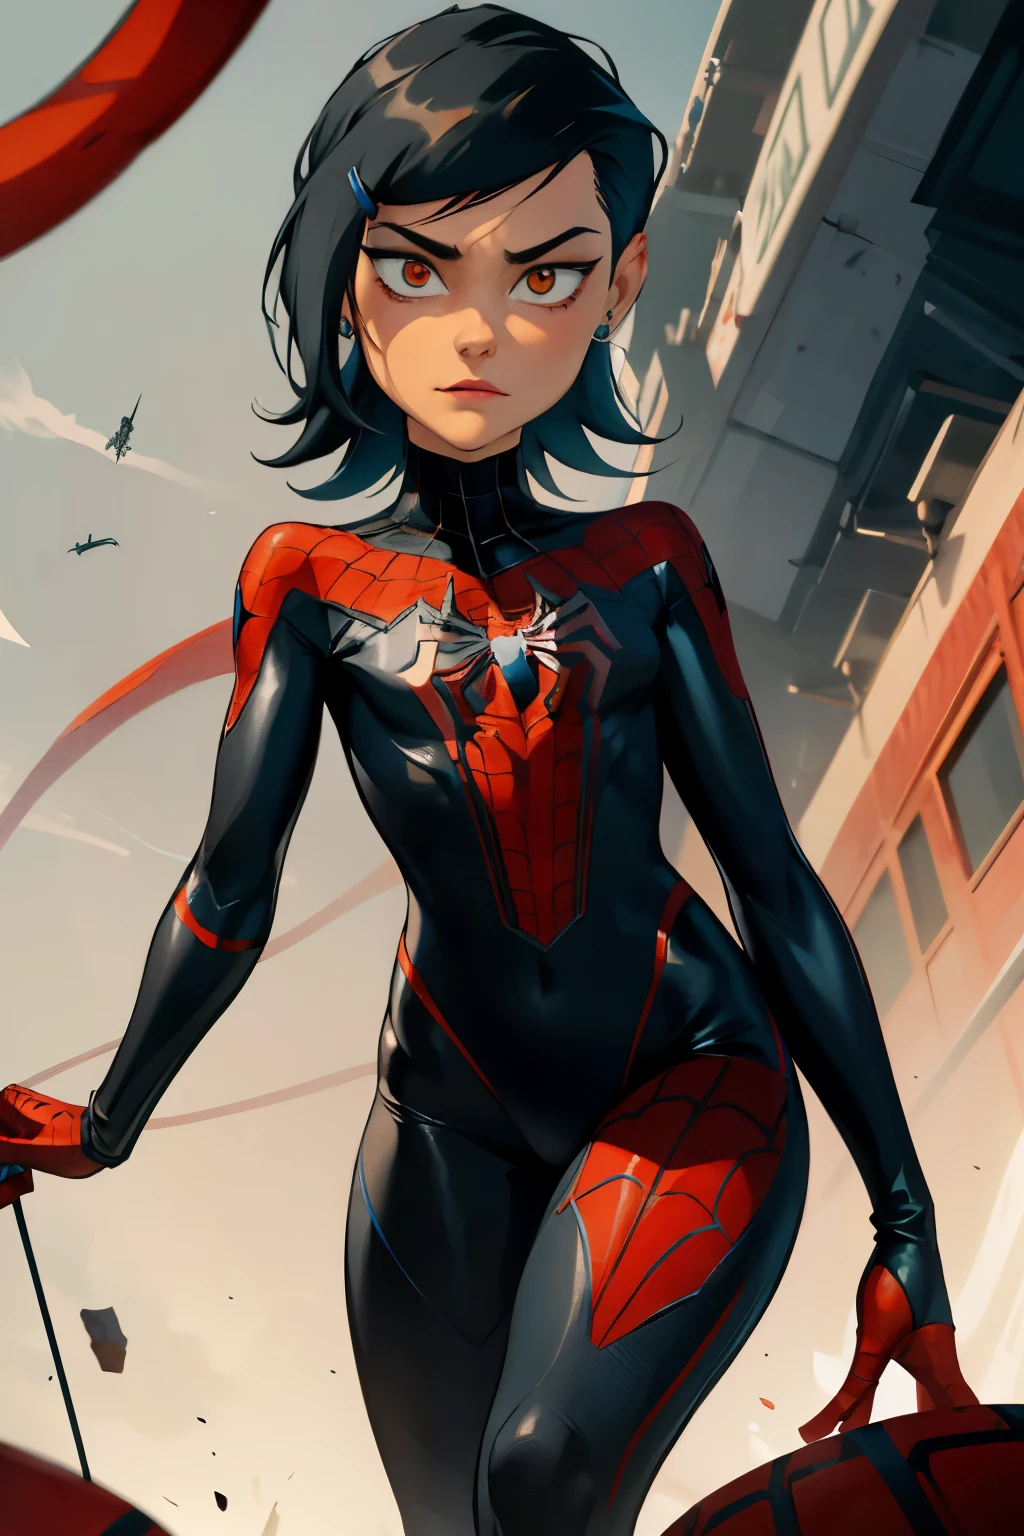 Erstellen Sie eine Spider-Man-Persona, die ein Mädchen ist, das aussieht wie 19, sie hat gebräunte Haut und lange schwarze Haare mit Pony. Ihre Augen sind braun, und ihr Gesicht sieht koreanisch aus. Ihr Spinnenanzug ist schwarz mit roten und weißen Akzenten. Sie ist vom Spider-Man in das Spiderverse-Universum. 